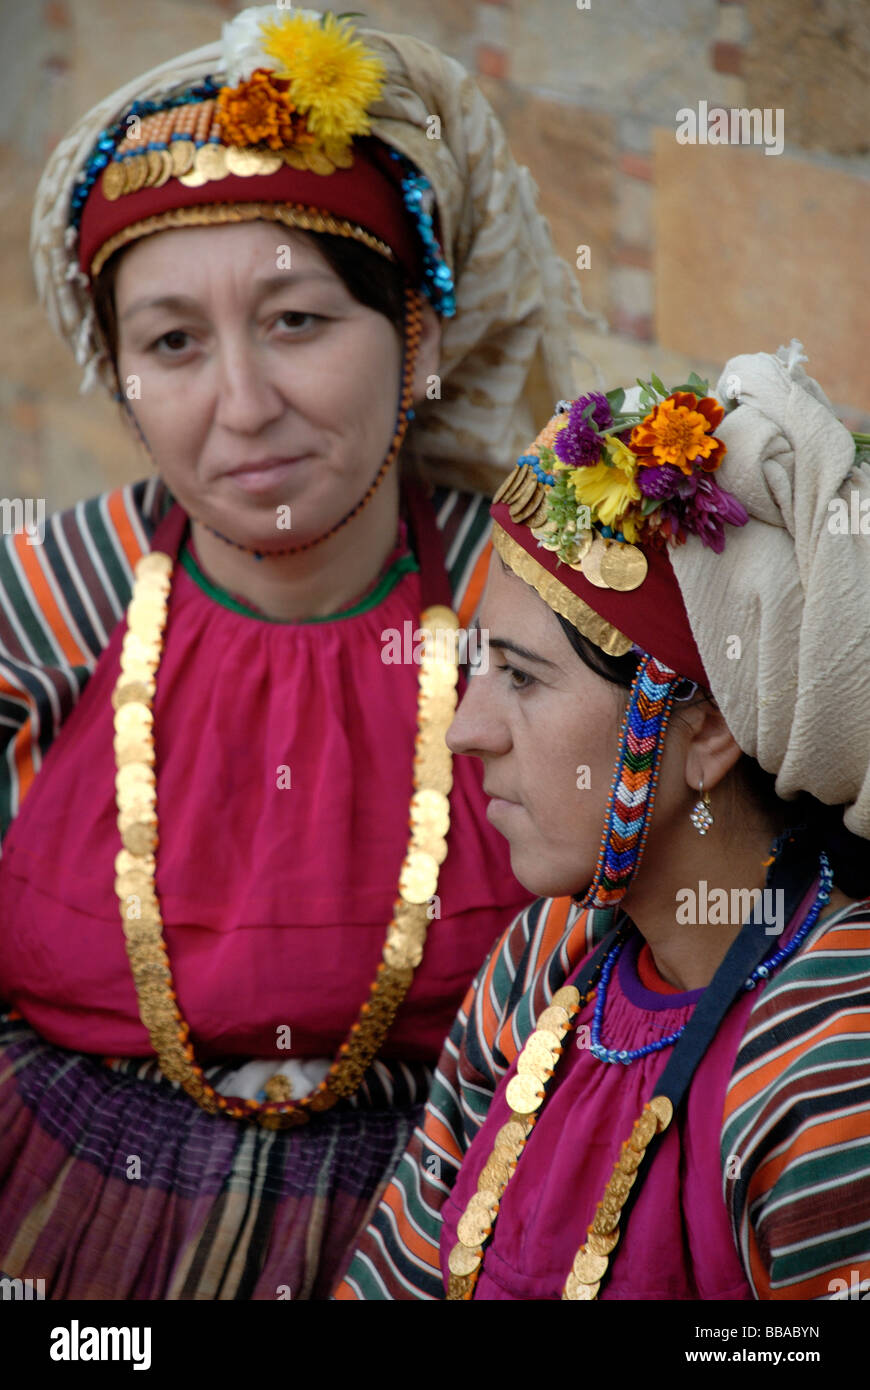 Turkische Hochzeit Kleidung Frauen - Hochzeits Idee